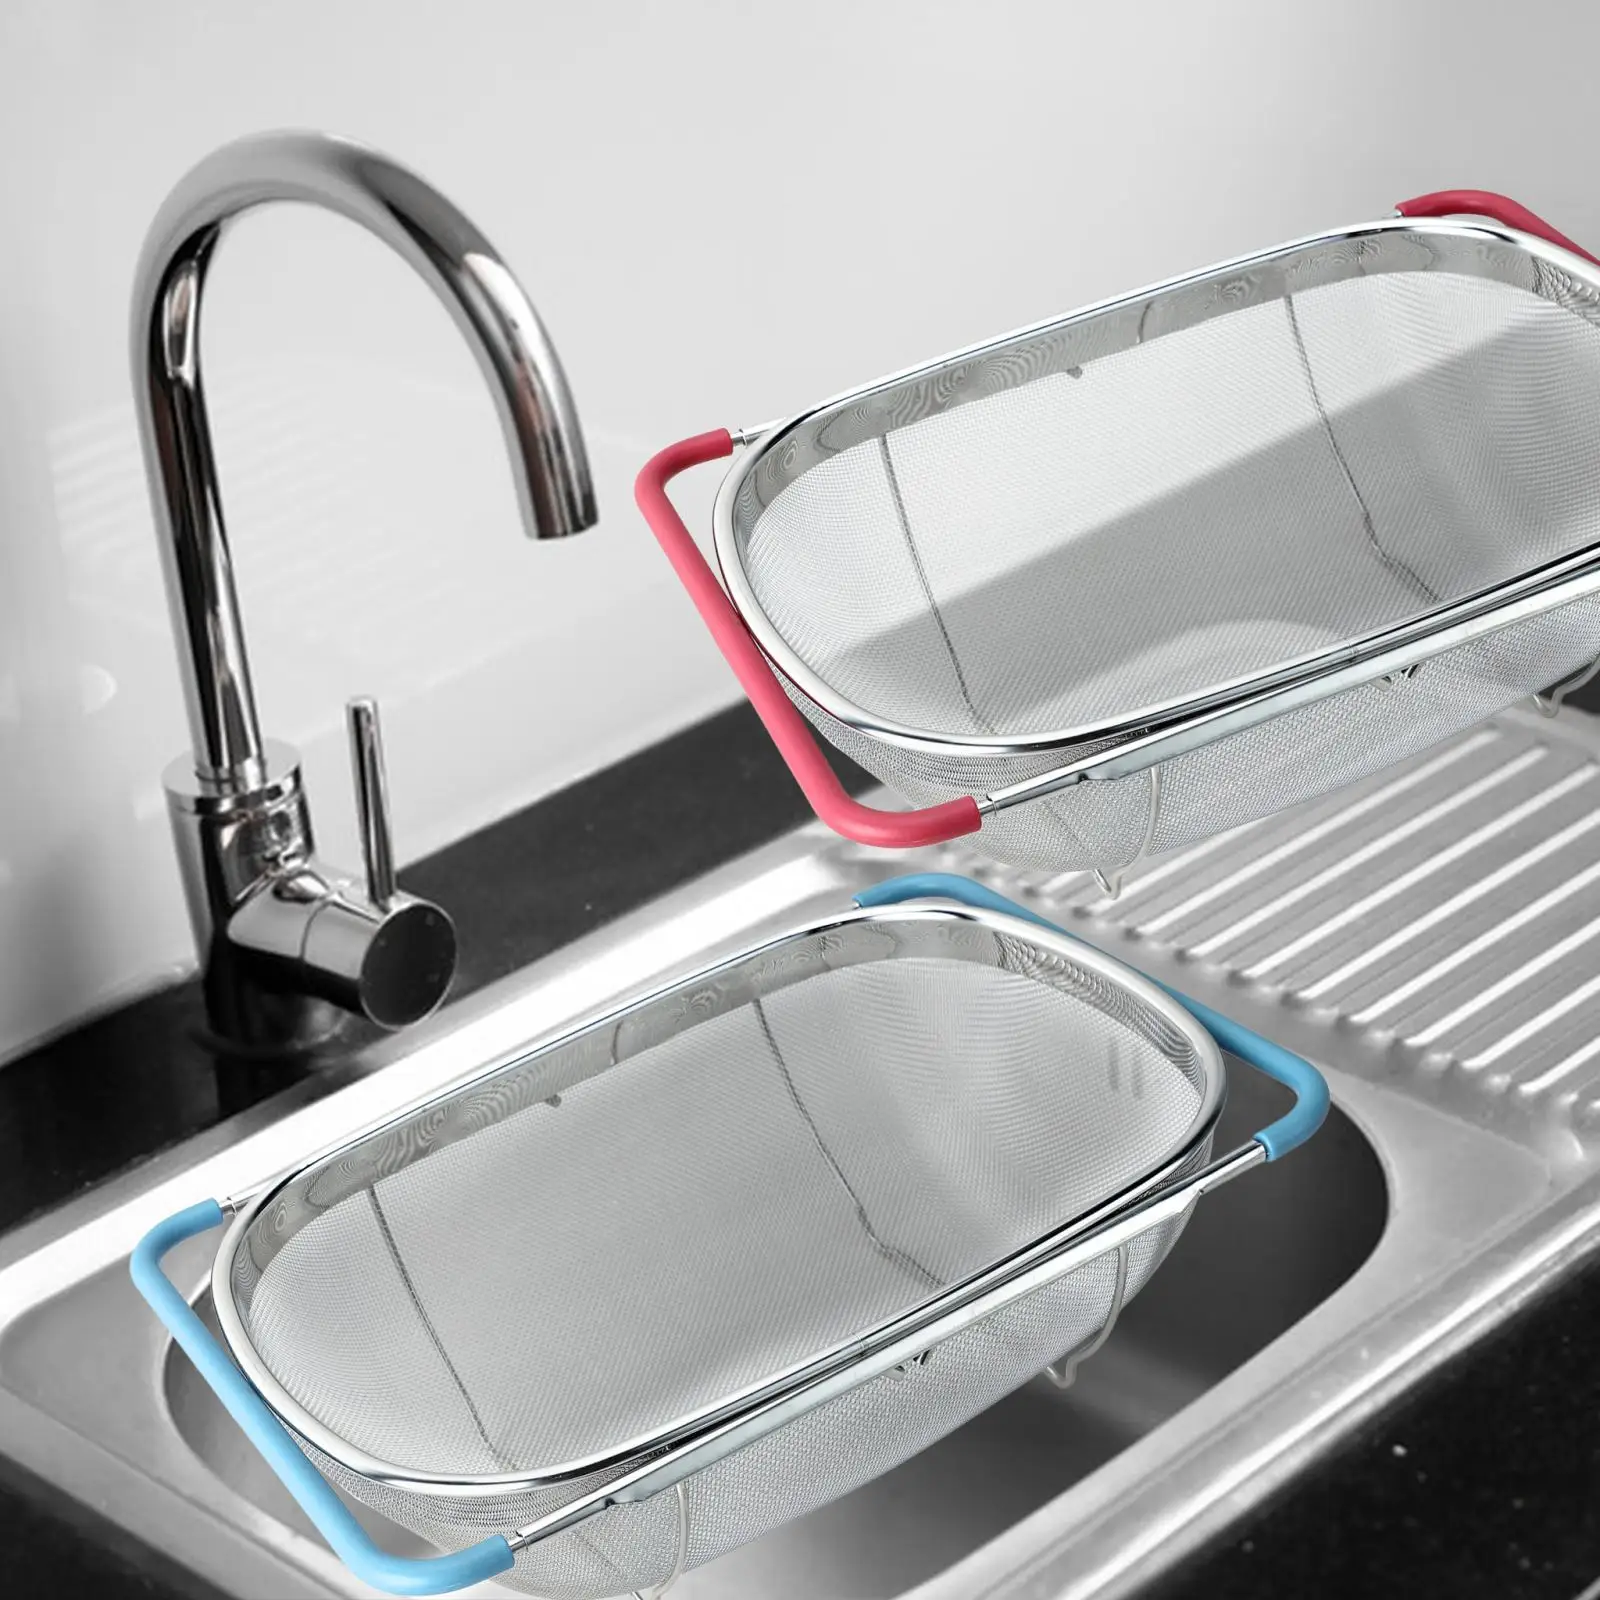 over Sink Colander Basket Expandable Kitchen Sink Rack with Steady Base Sink Washing Basket Adjustable Strainer Kitchen Supply